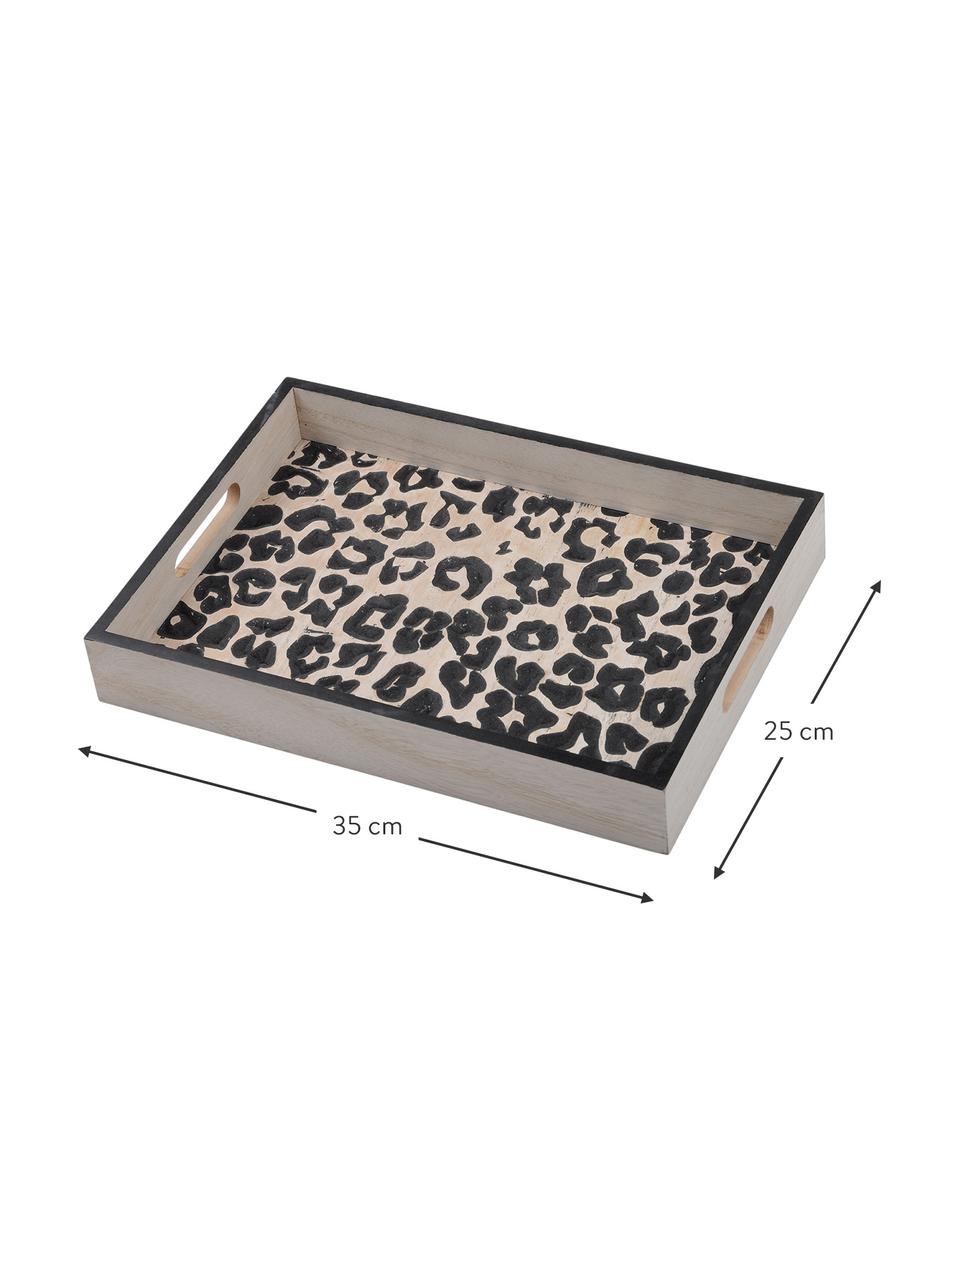 Plateau de service en bois Leopard, 25 x 35 cm, Brun clair, noir